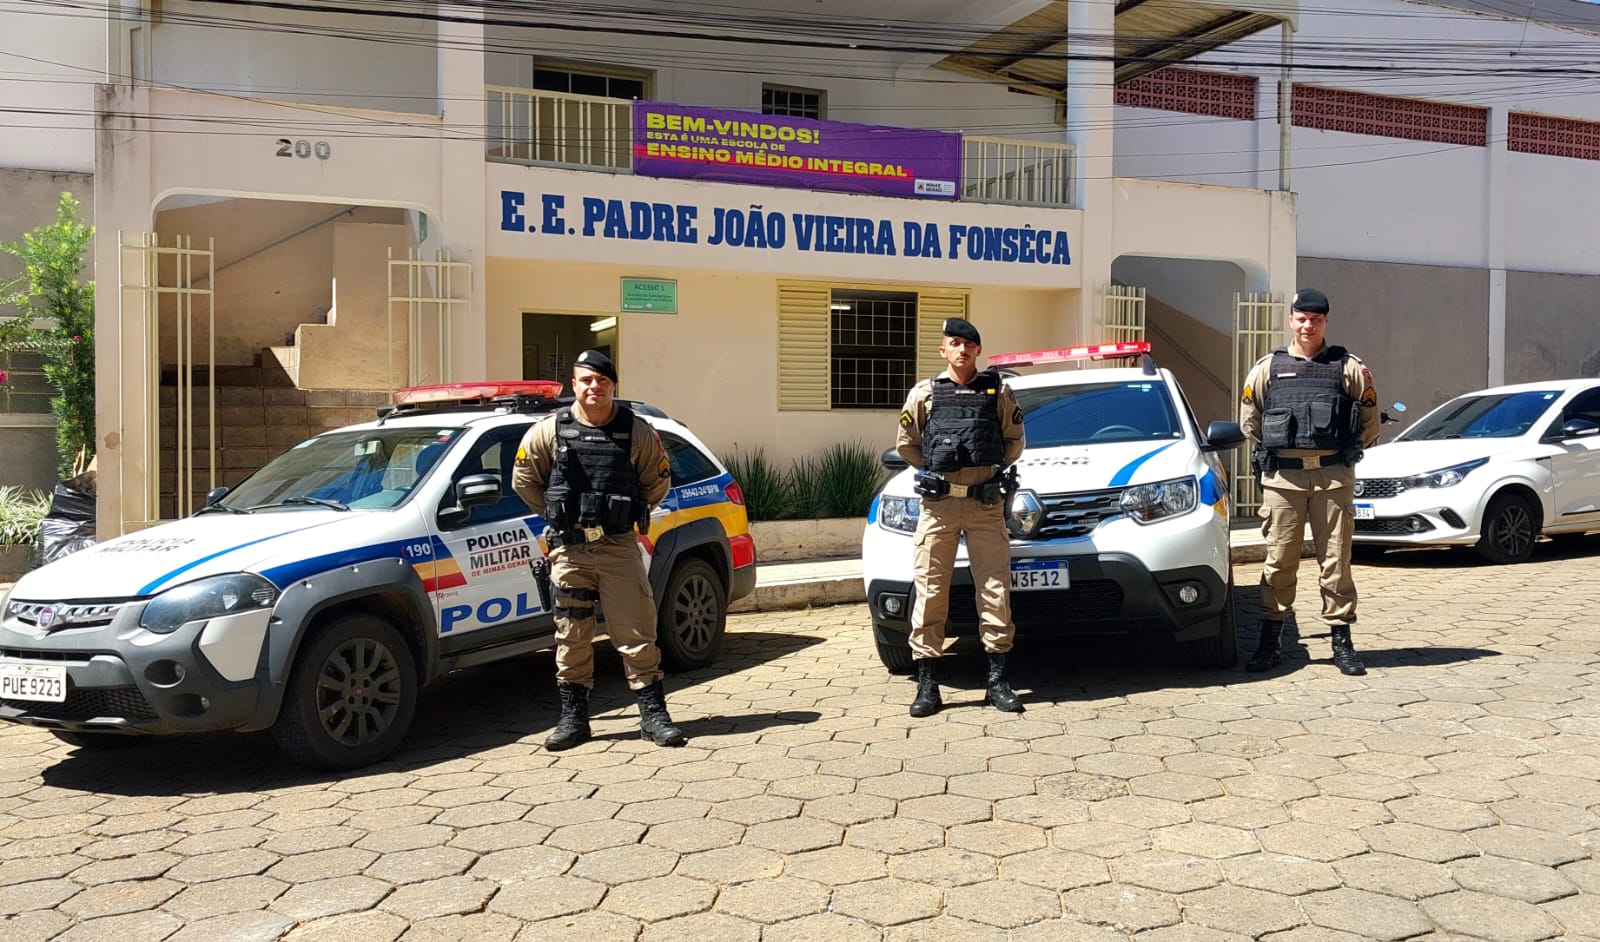 Três policiais militares de Minas Gerais à frente de suas viaturas, em frente uma escola estaduak